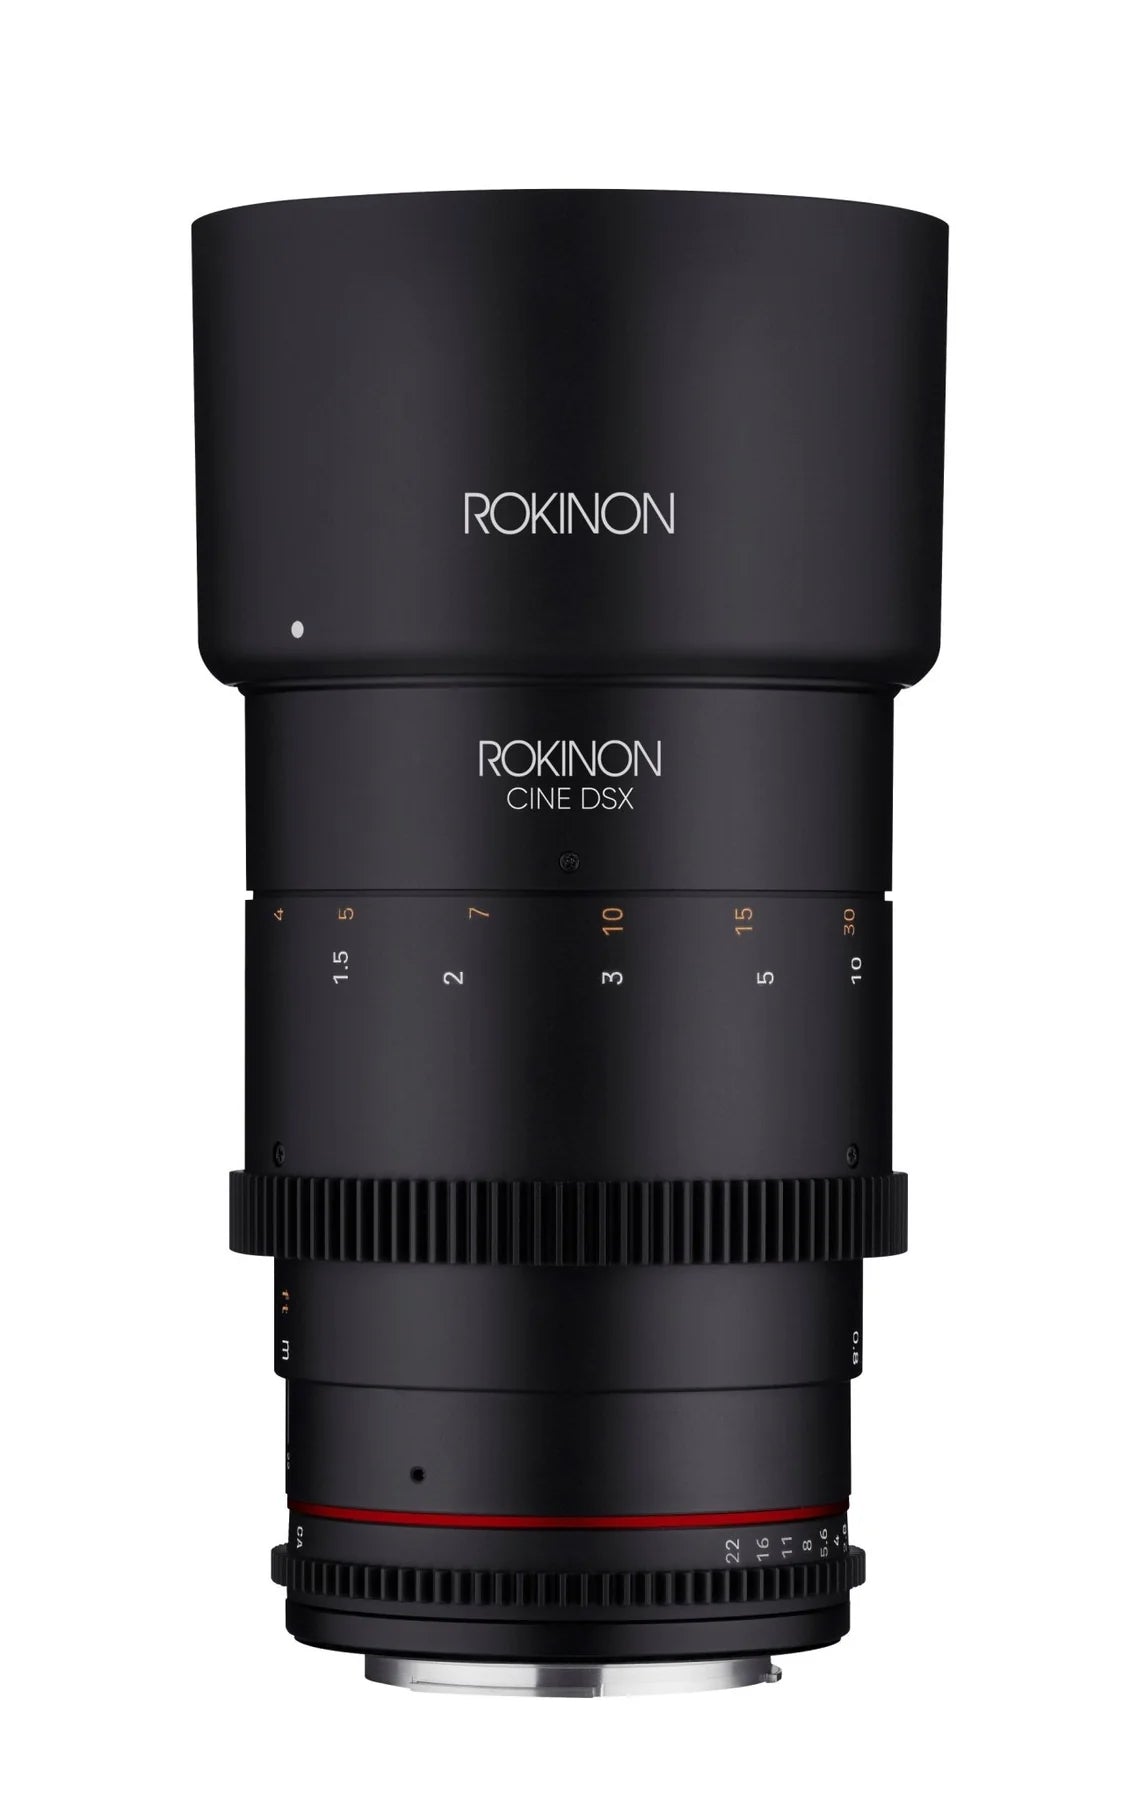 Rokinon 135mm T2.2 Full Frame Telephoto Cine DSX Lens | Filter Size 77mm - Canon EF Lens Mount Camera tek